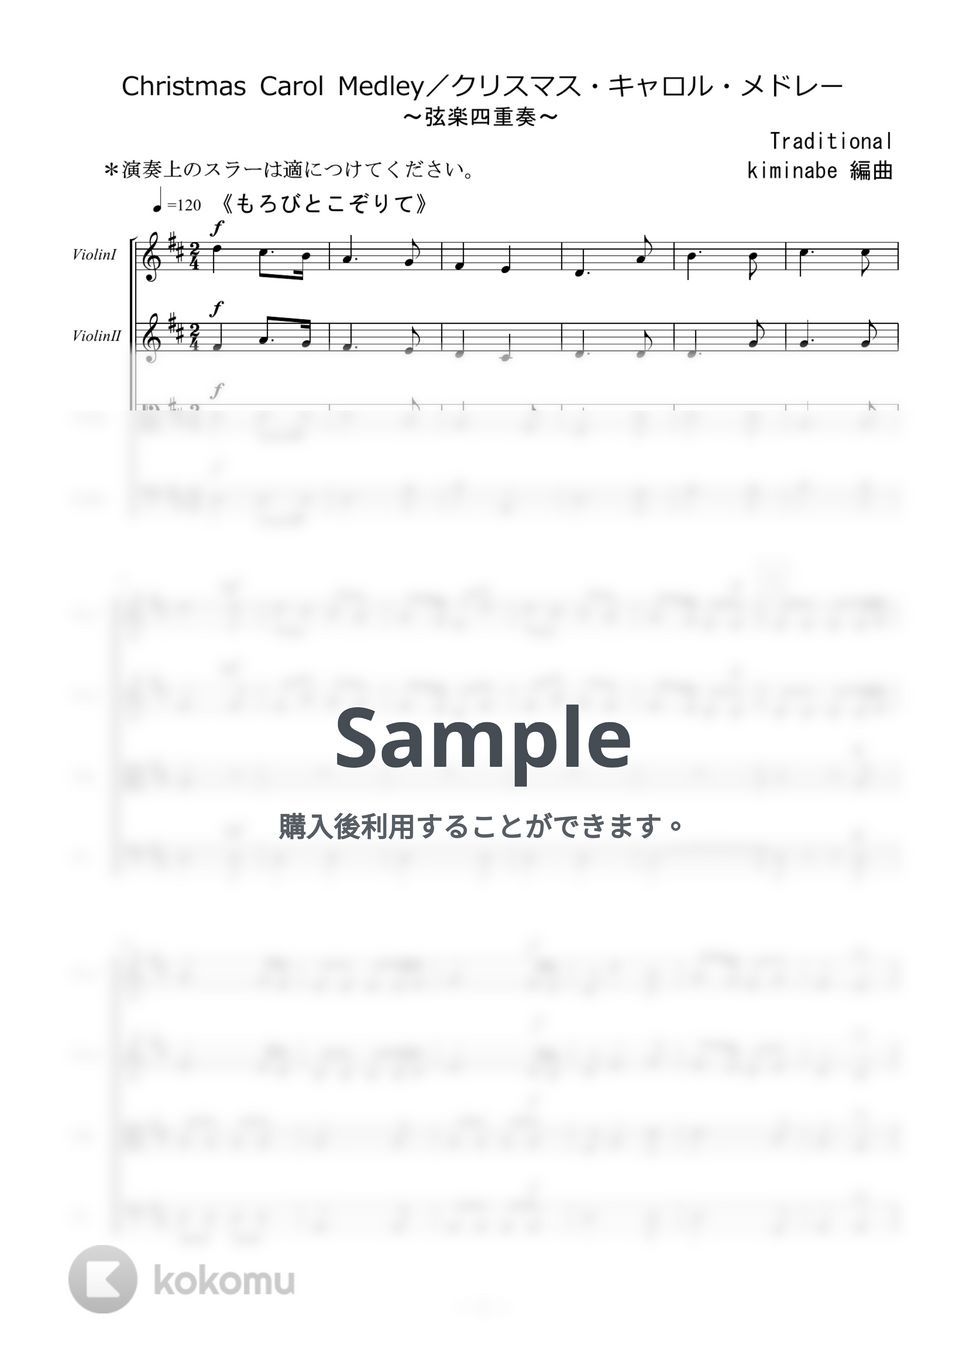 讃美歌 - Christmas Carol Medley／クリスマス・キャロル・メドレー (弦楽四重奏) by kiminabe